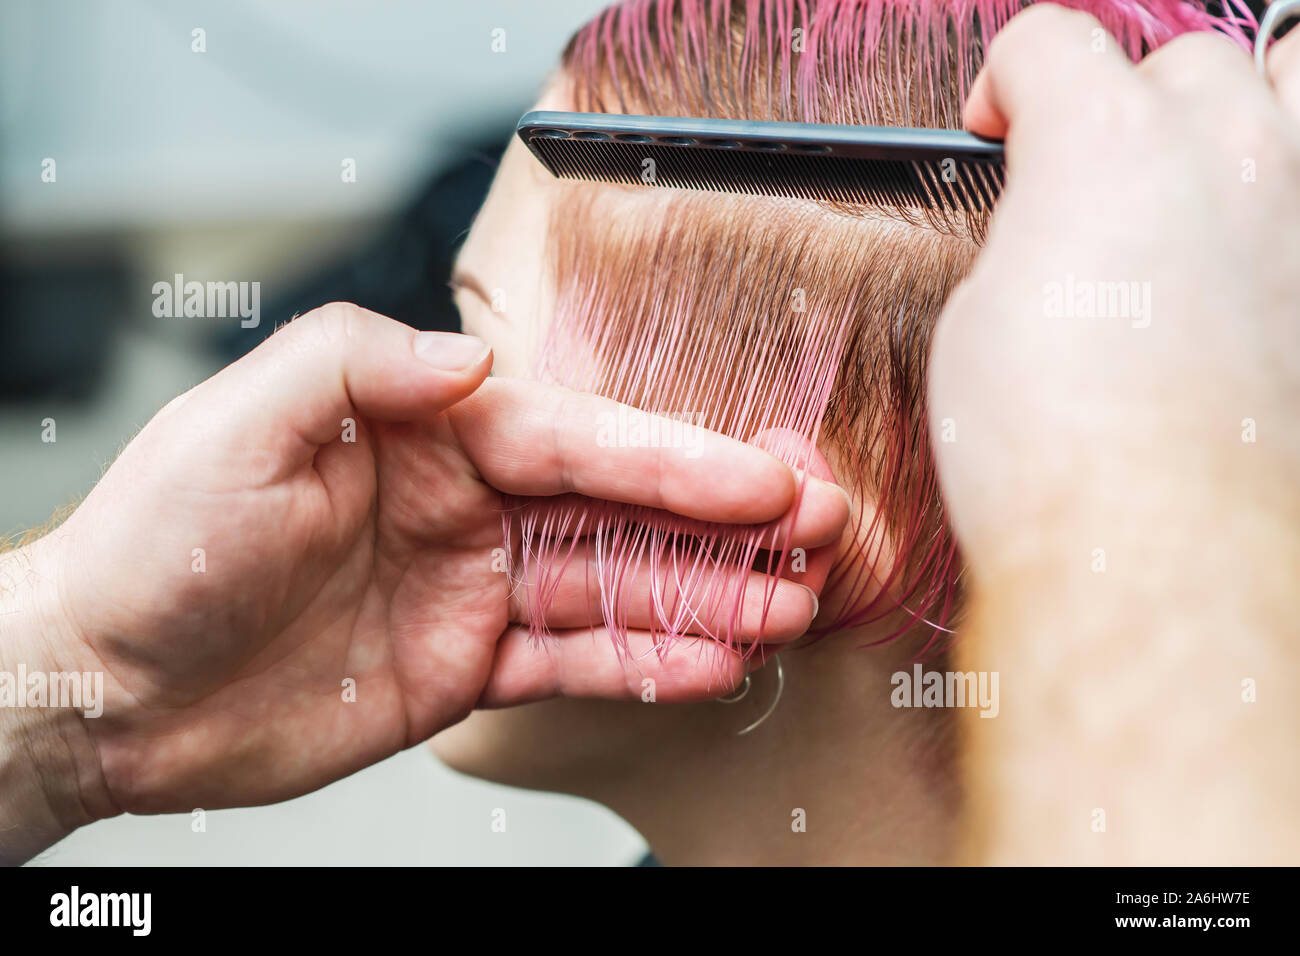 Friseur kämme Girl's Haar beim Schneiden. Hände von Friseur sind Kämmen der Frau Haar an Beauty Salon. Stockfoto